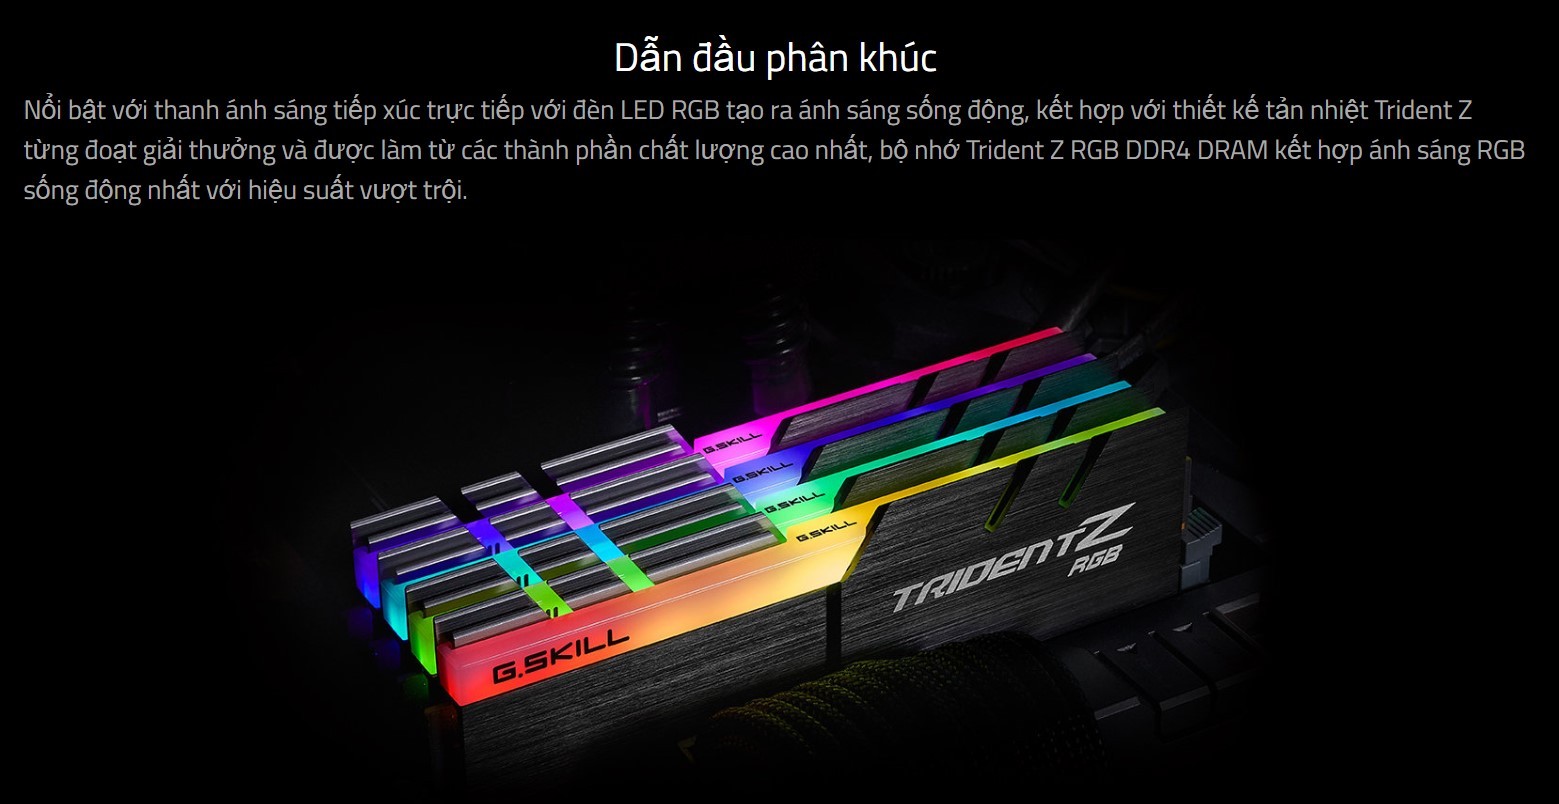 RAM GSKILL TRIDENT Z RGB 16GB (2x8GB) DDR4 3000MHz (F4-3000C16D-16GTZR)